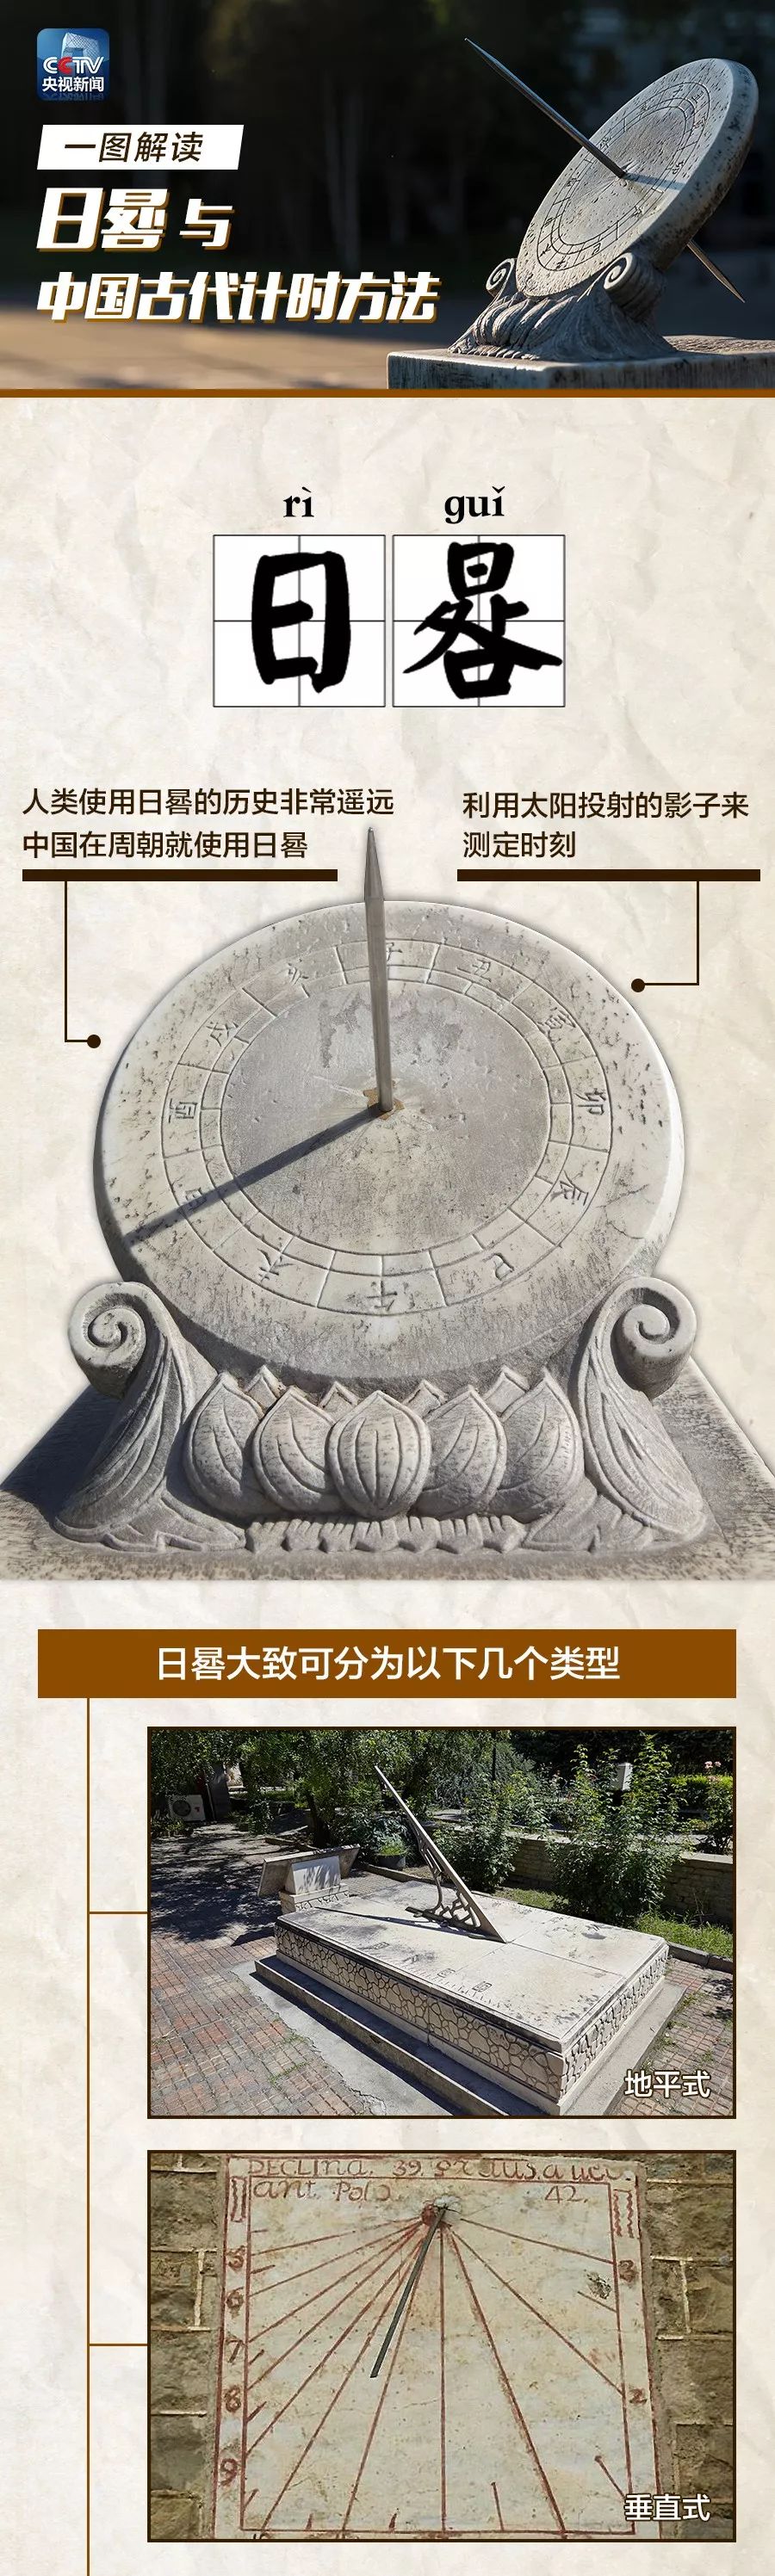 古代日晷上时间对照表图片